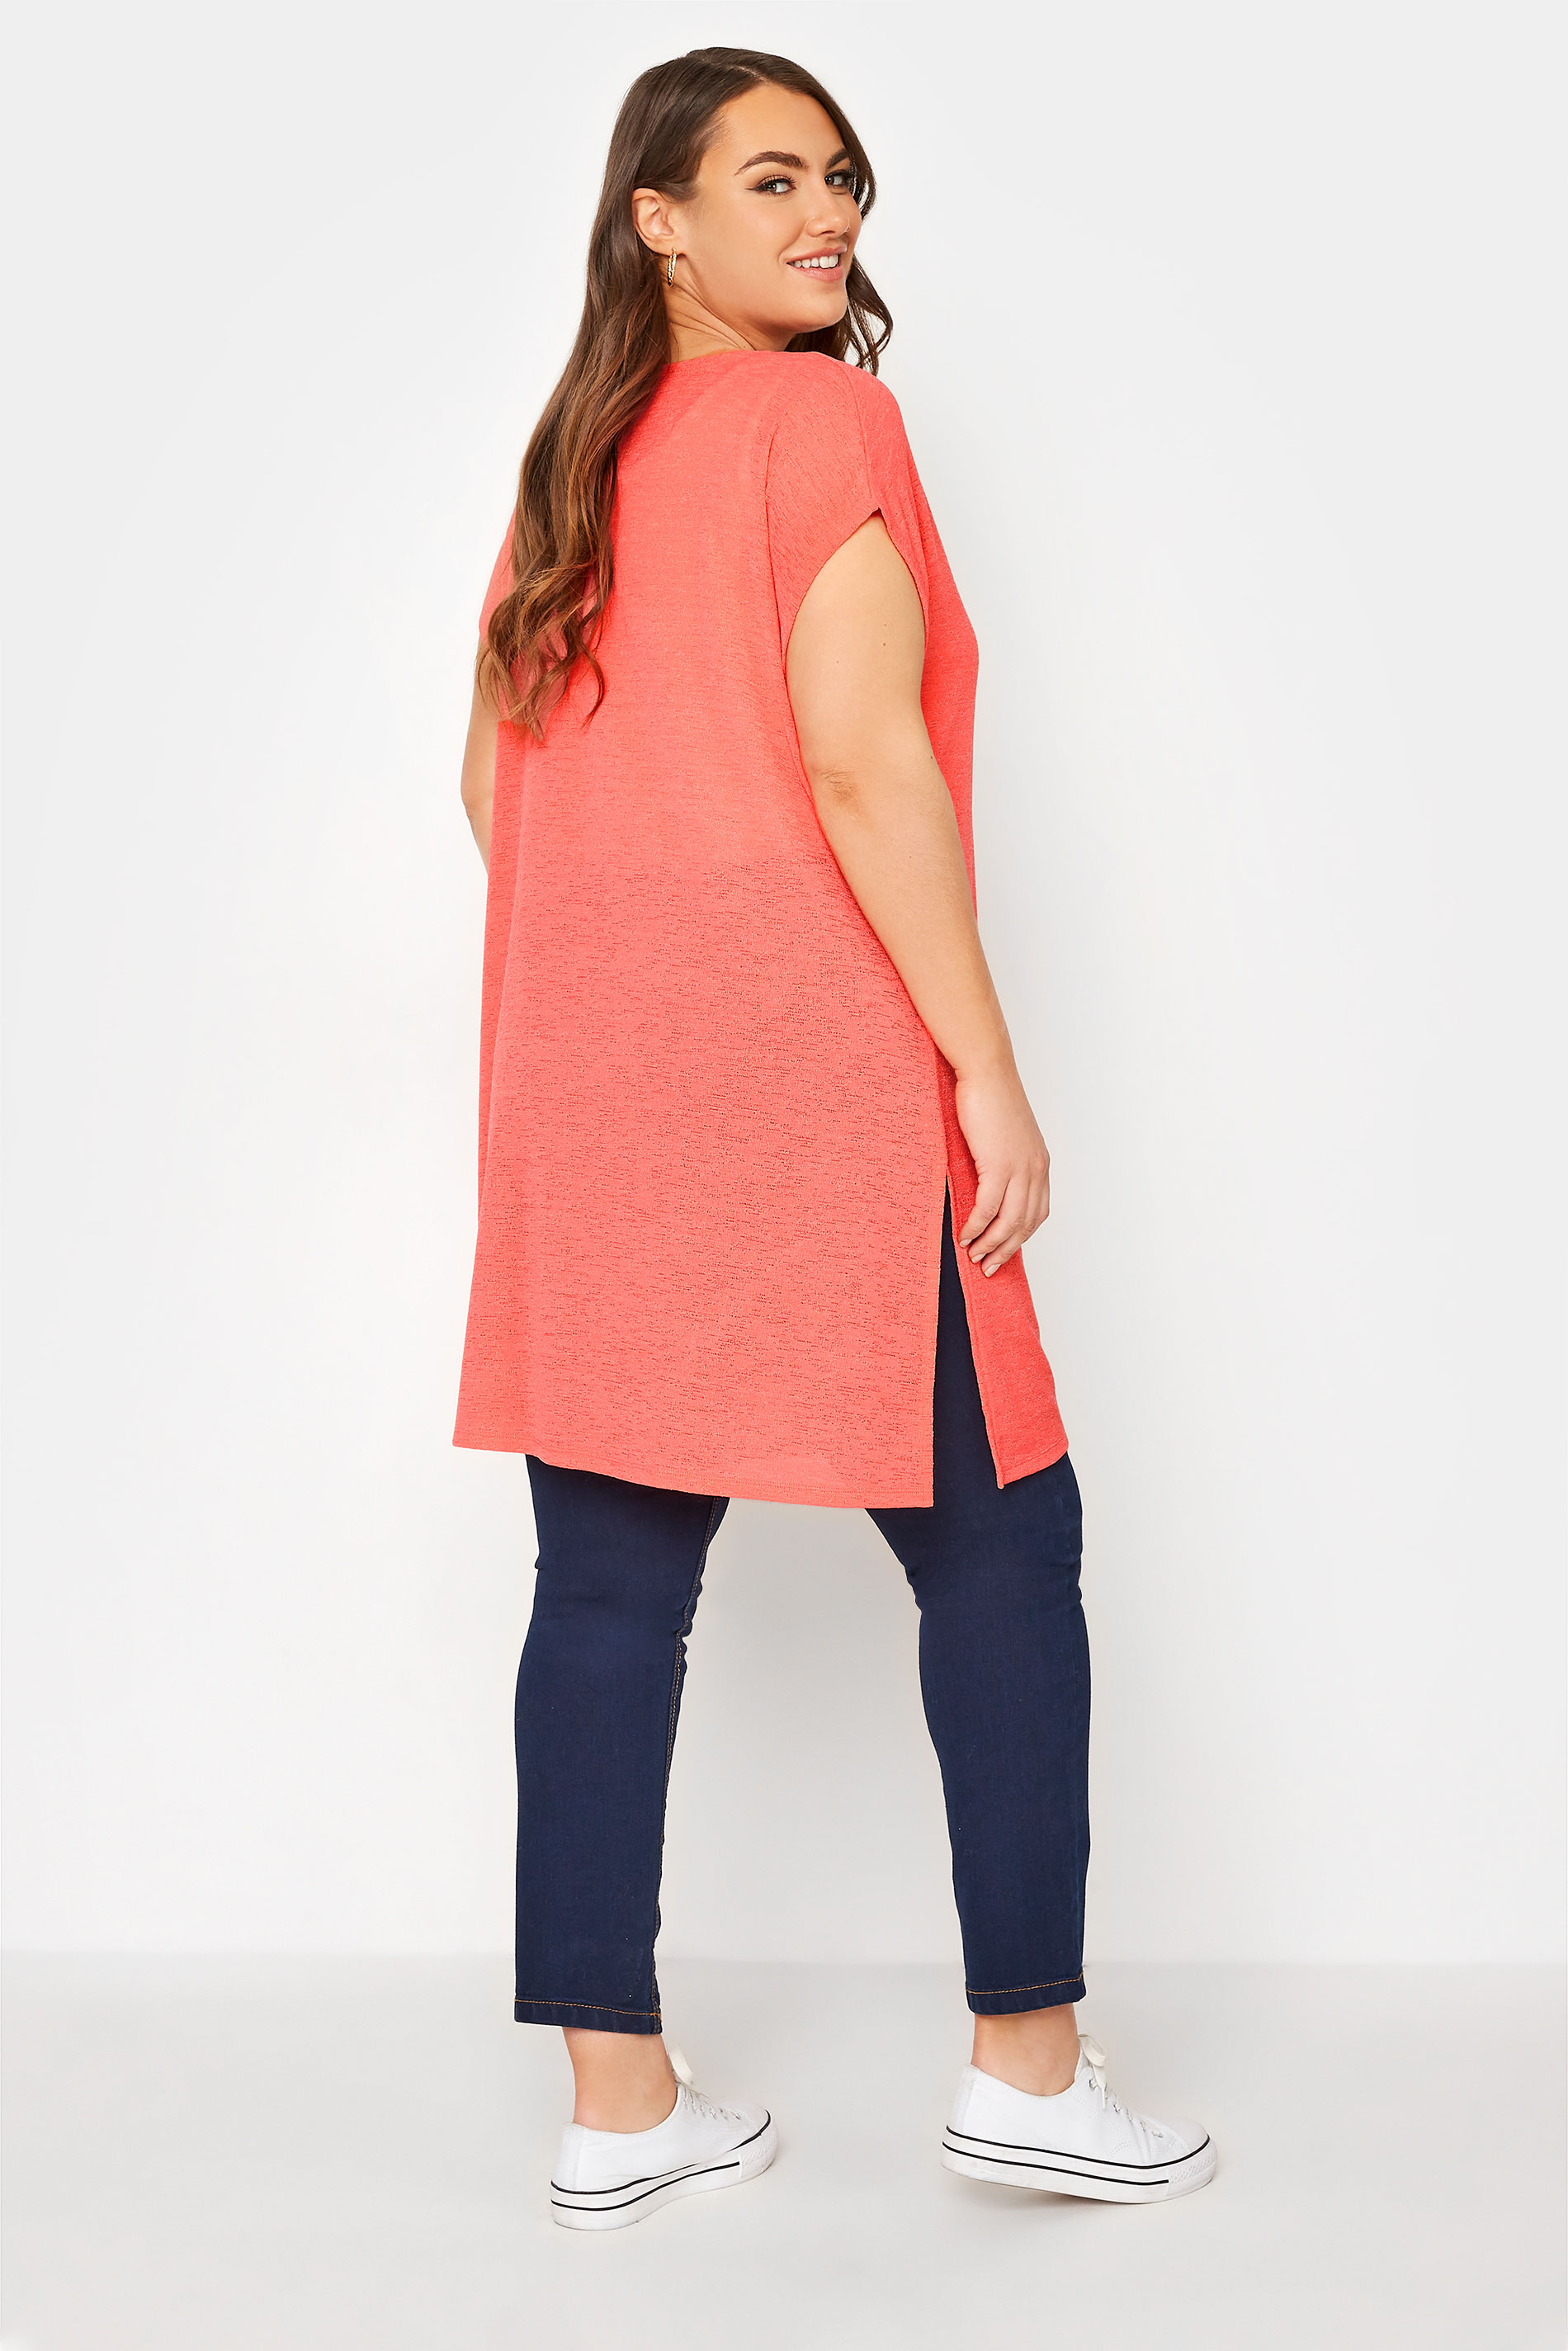 Plus Size Coral Orange Short Sleeve Cardigan | Yours Clothing 3